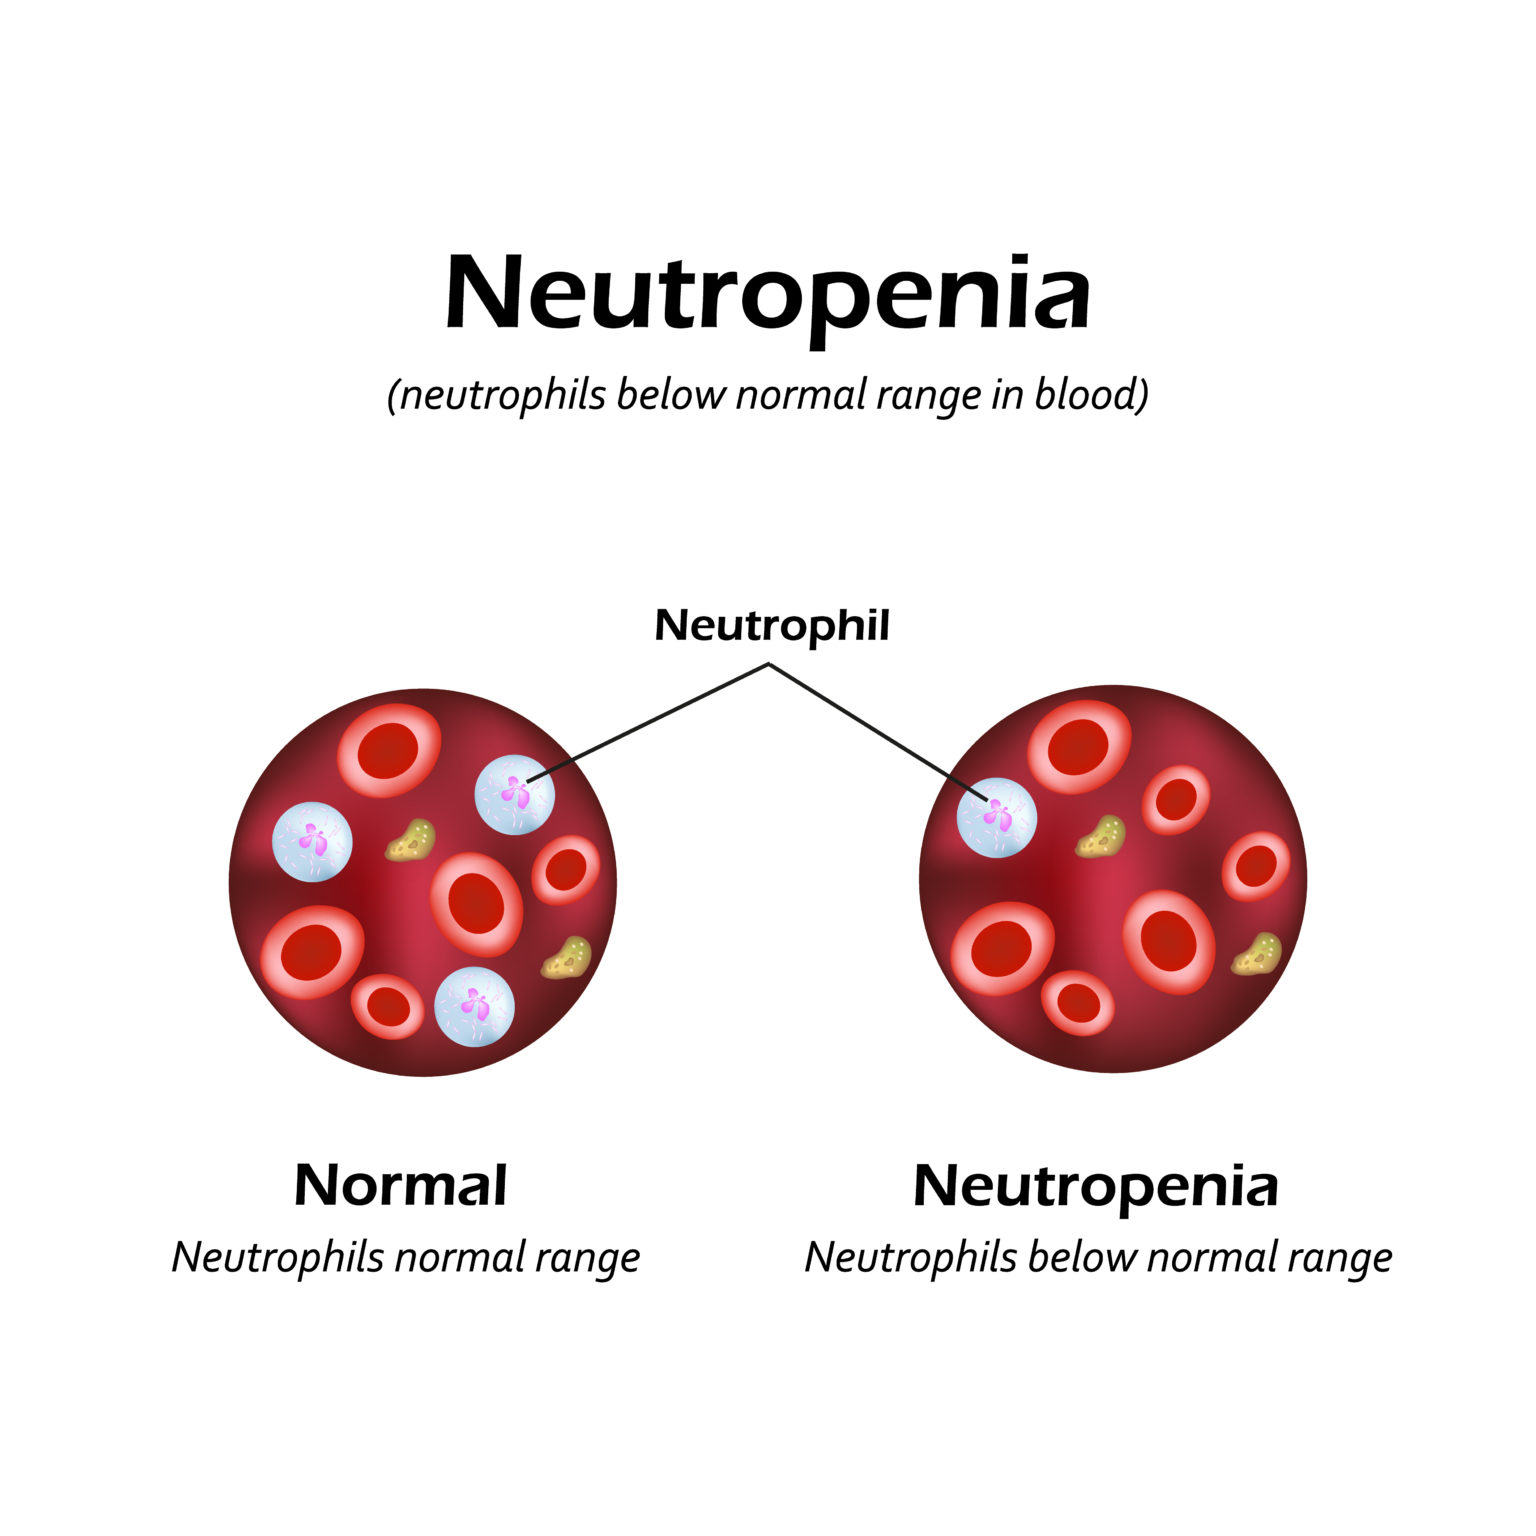 neutropenia-causes-symptoms-and-treatment-apollo-hospital-blog